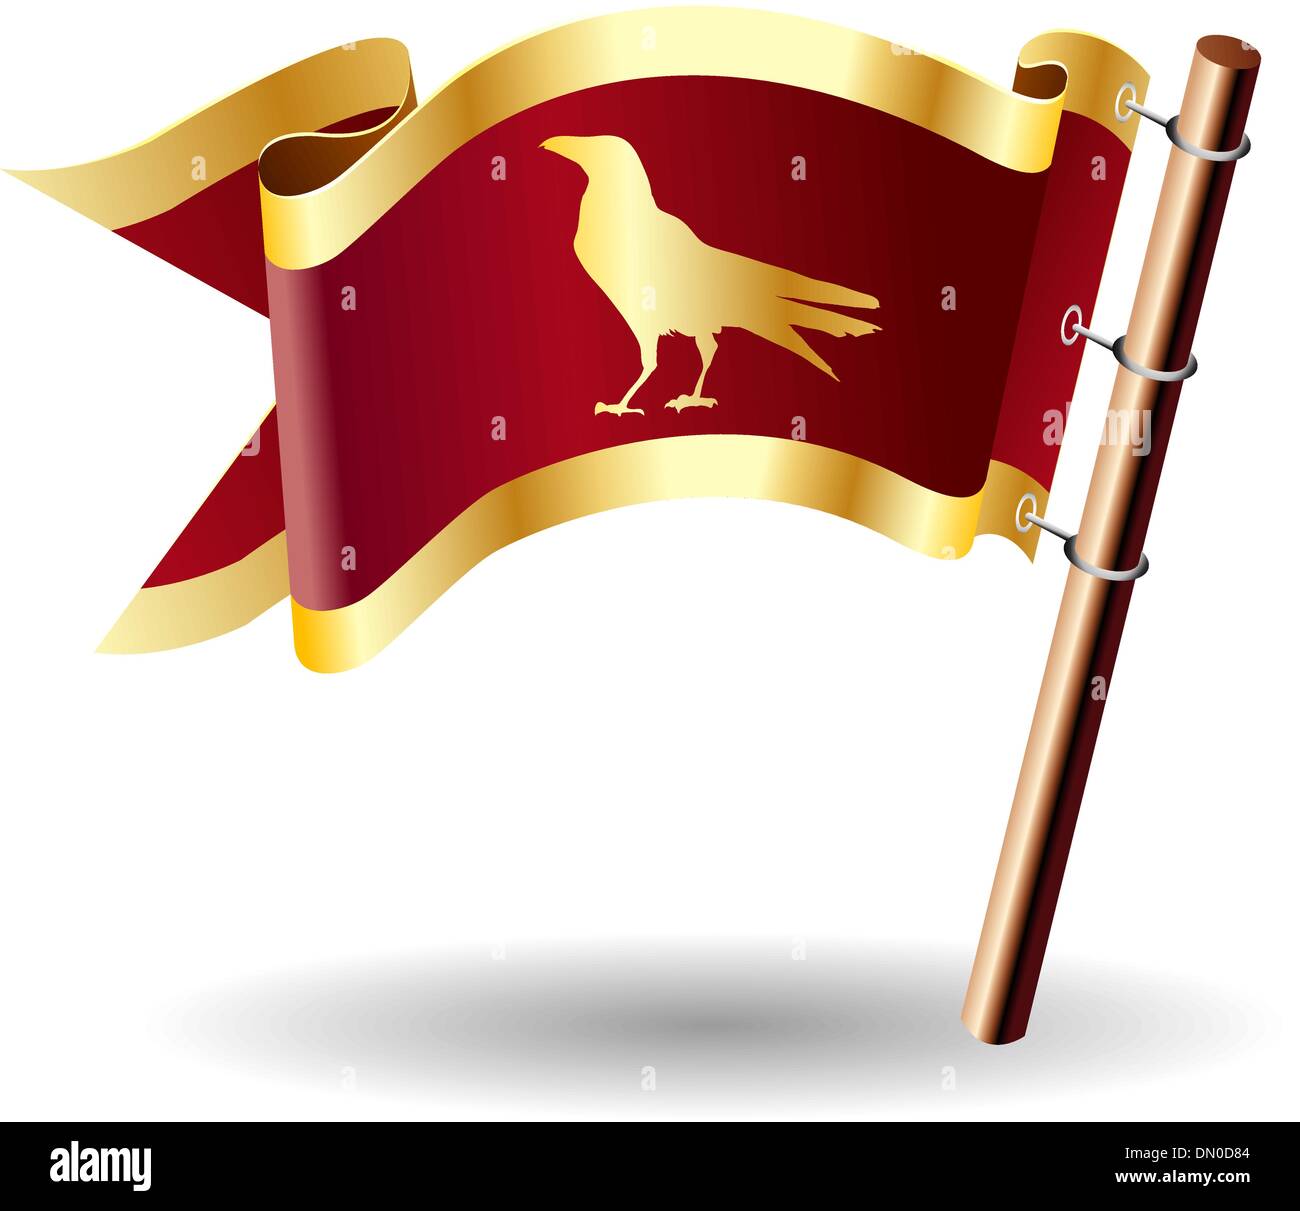 Blackbird royal flag Stock Vector